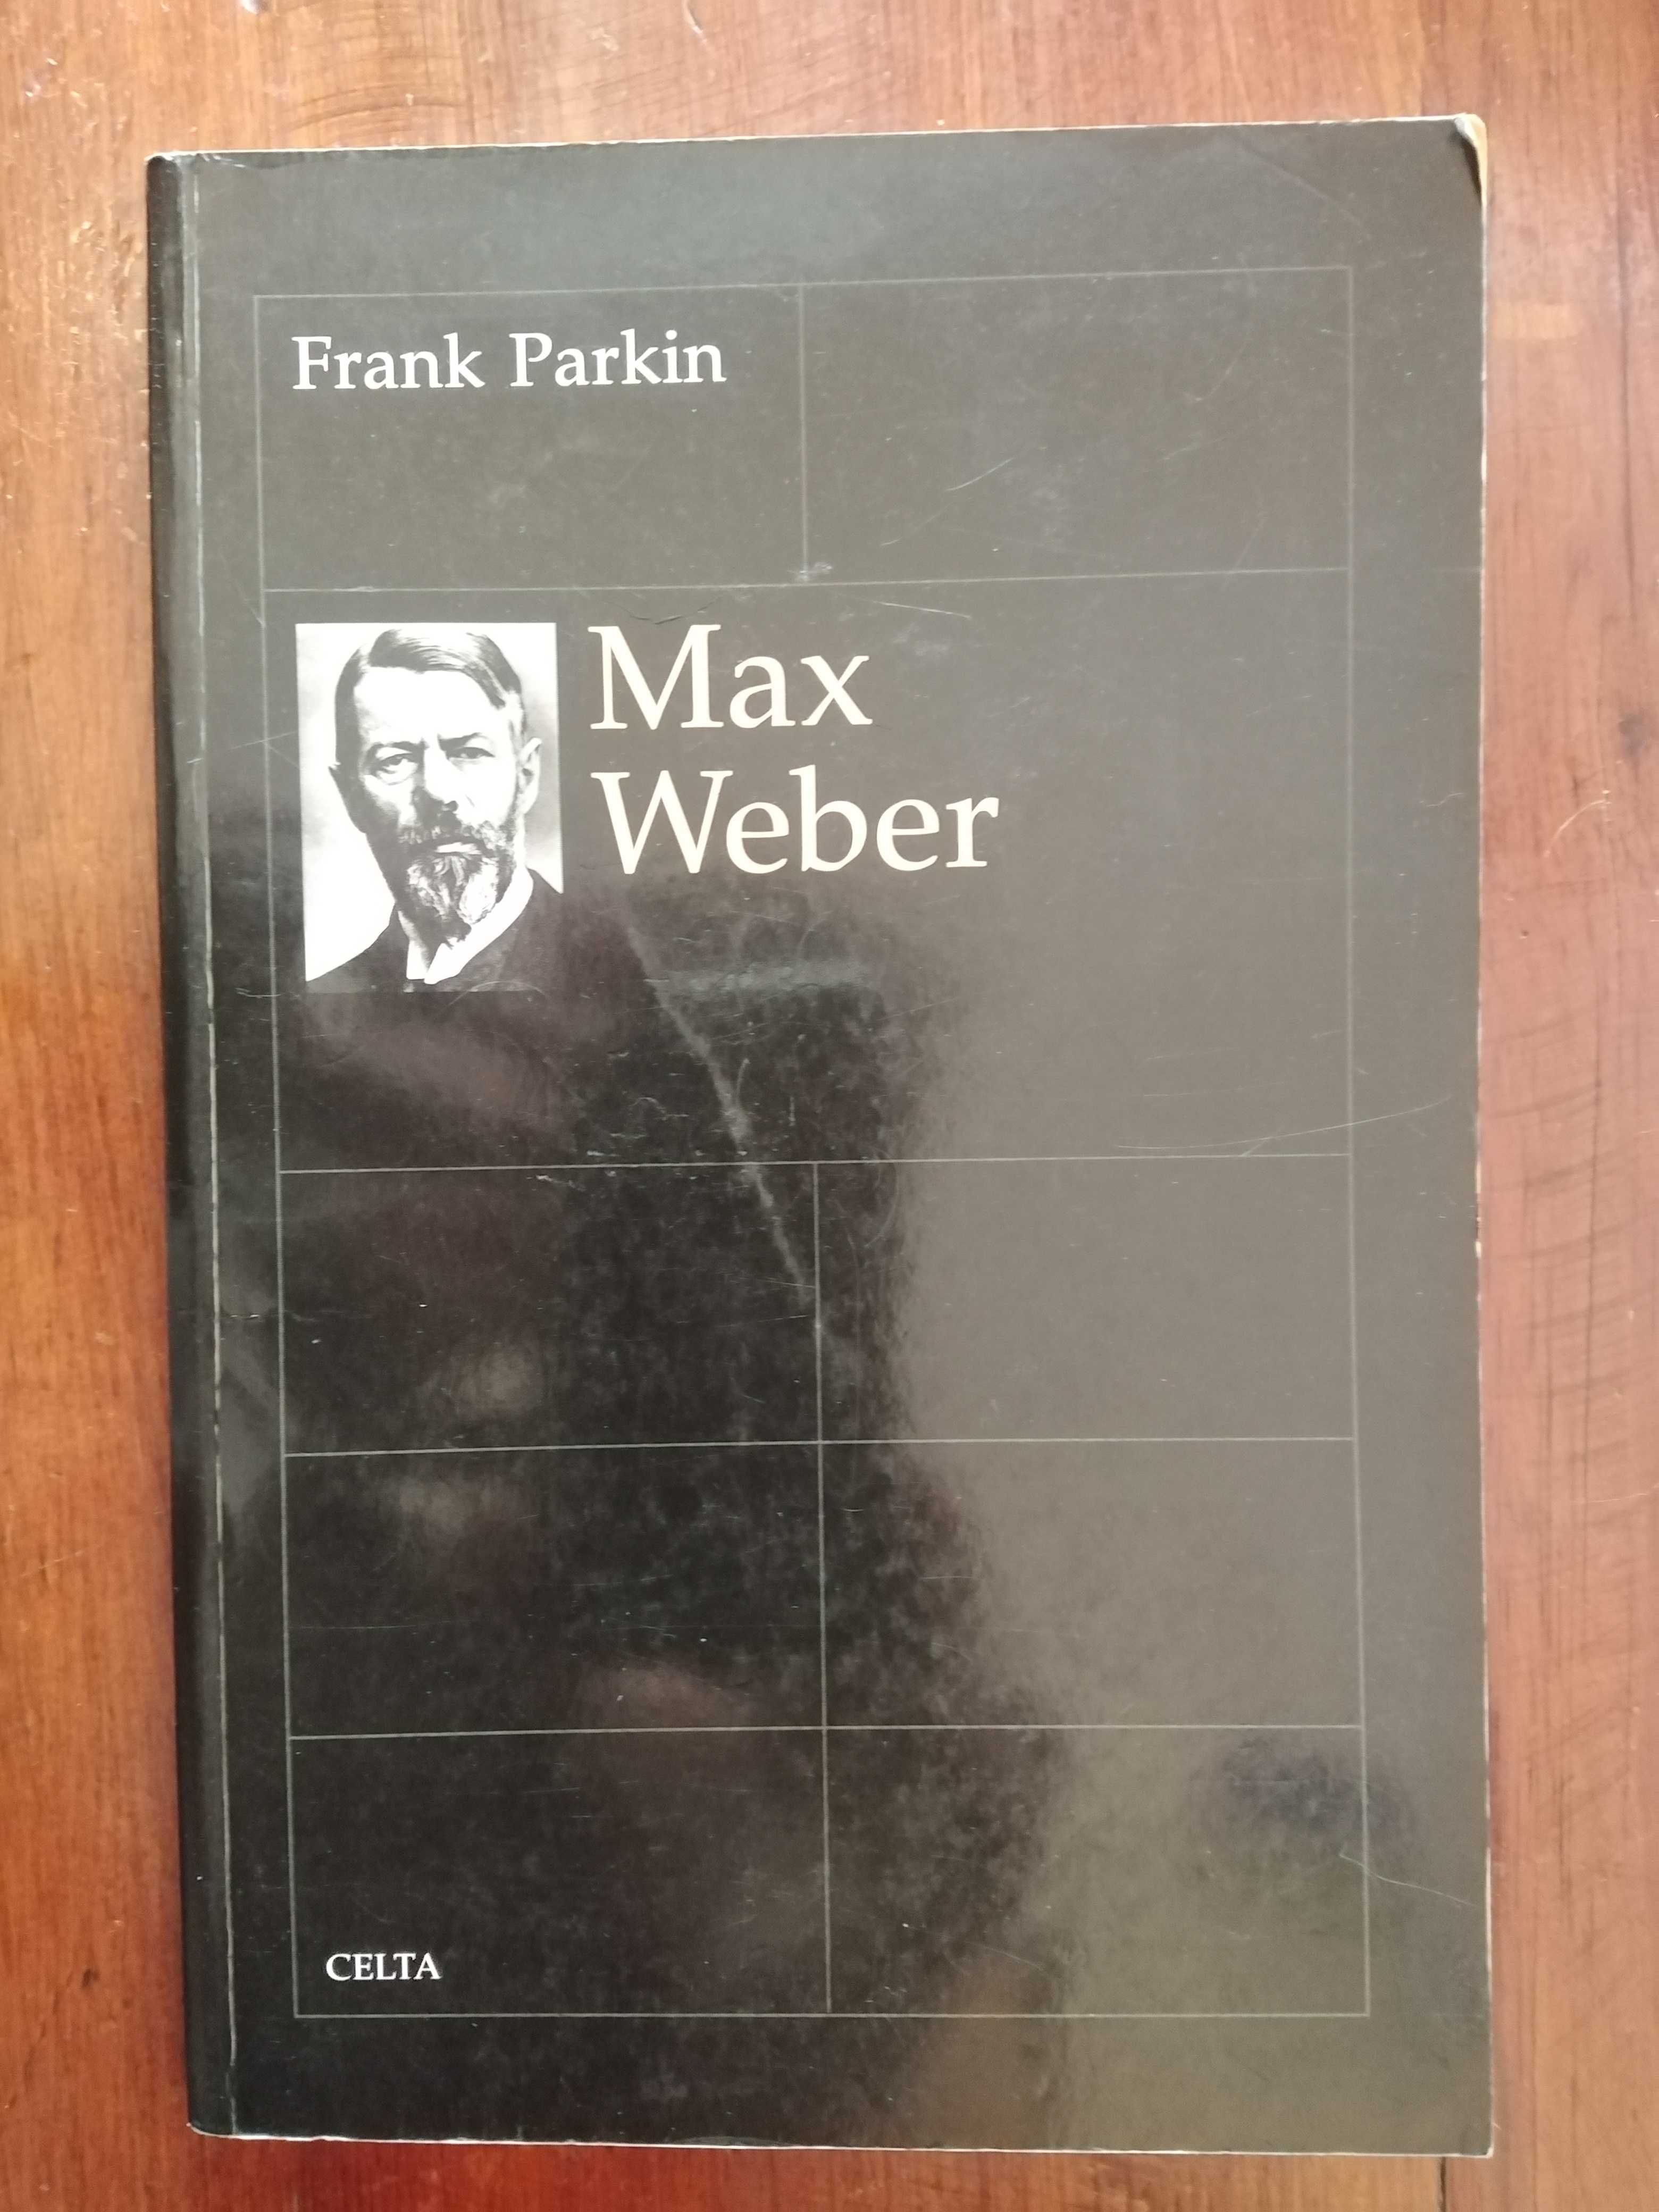 Frank Parkin - Max Weber